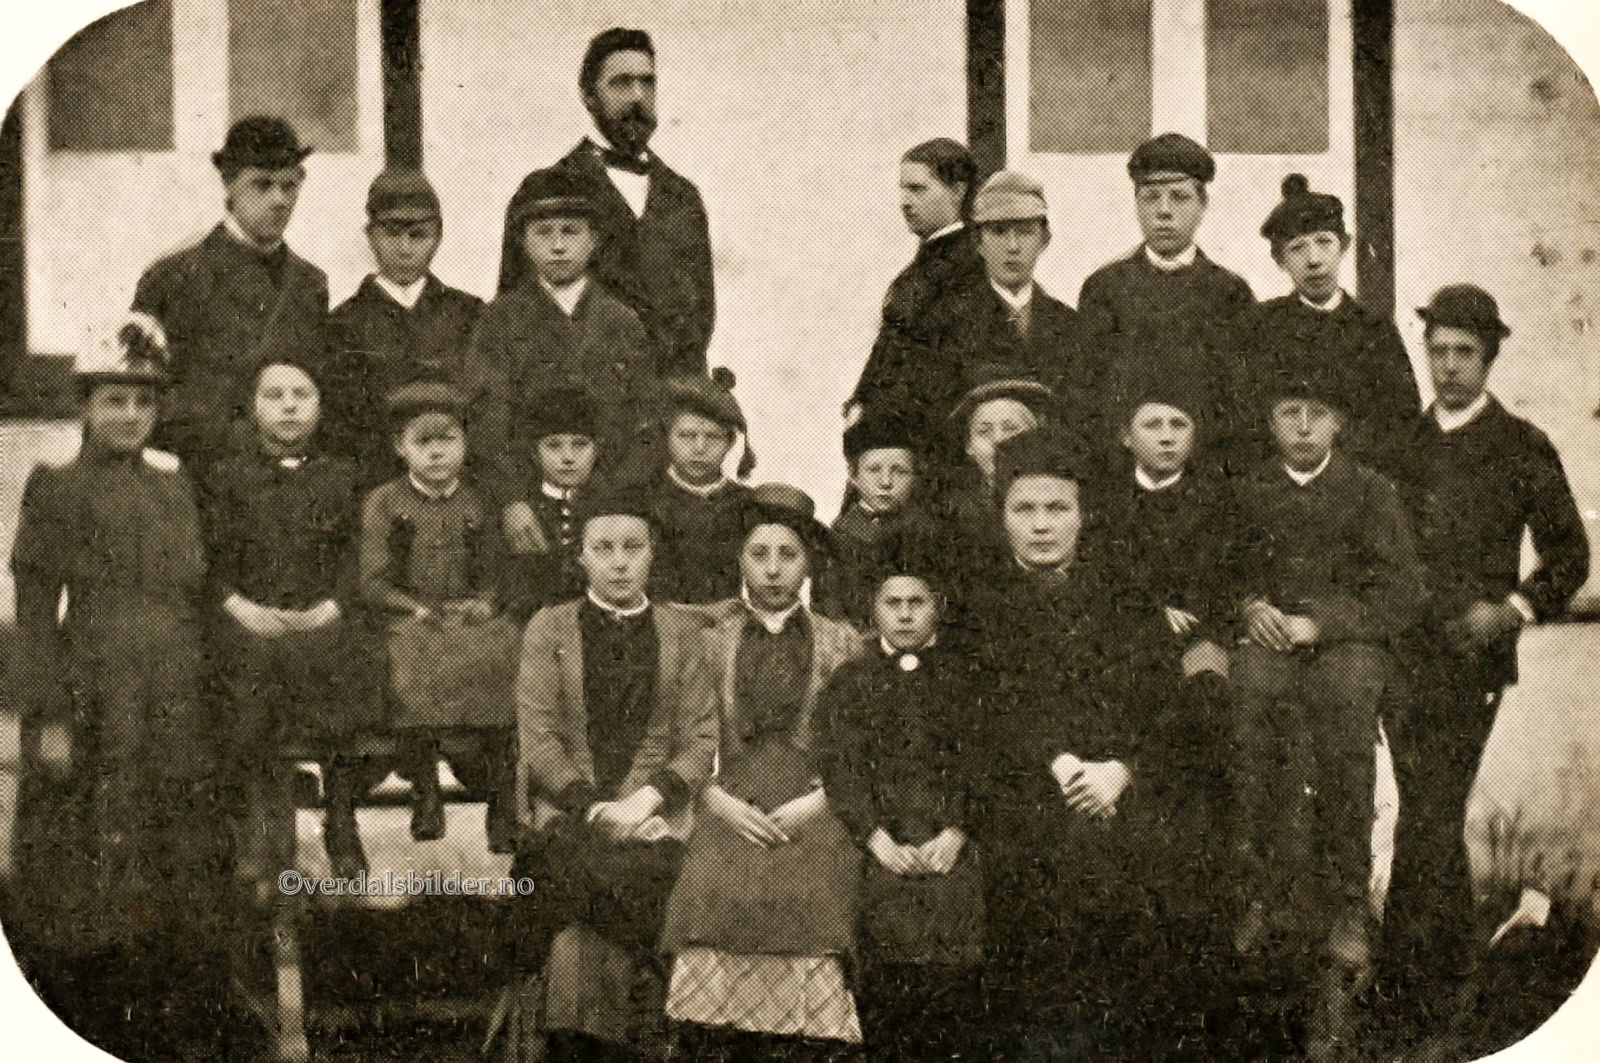  Den private middelskolen startet opp i 1881 og gikk inn 50 år senere, i 1931. Opplysninger og bilde hentet fra Verdalsboka bind  IIa.Ukjent fotograf.